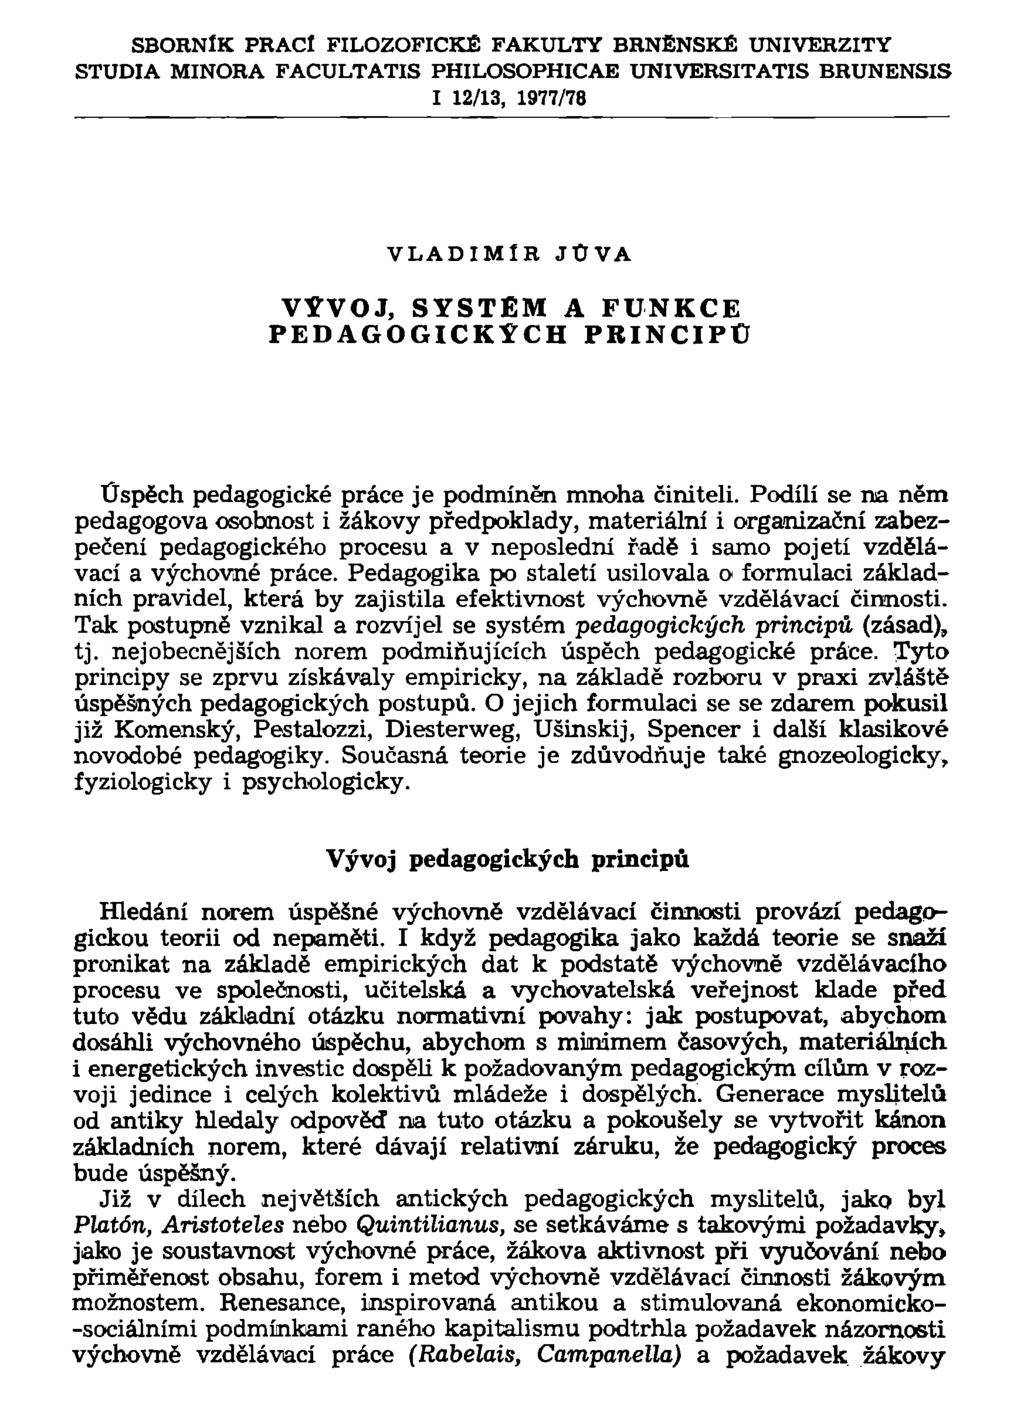 SBORNÍK PRACÍ FILOZOFICKÉ FAKULTY BRNĚNSKÉ UNIVERZITY STUDIA MINORA FACULTATIS PHILOSOPHICAE UNIVERSITATIS BRUNENSIS I 12/13, 1977/78 VLADIMÍR JÚVA VÝVOJ, SYSTÉM A FUNKCE PEDAGOGICKÝCH PRINCIPU